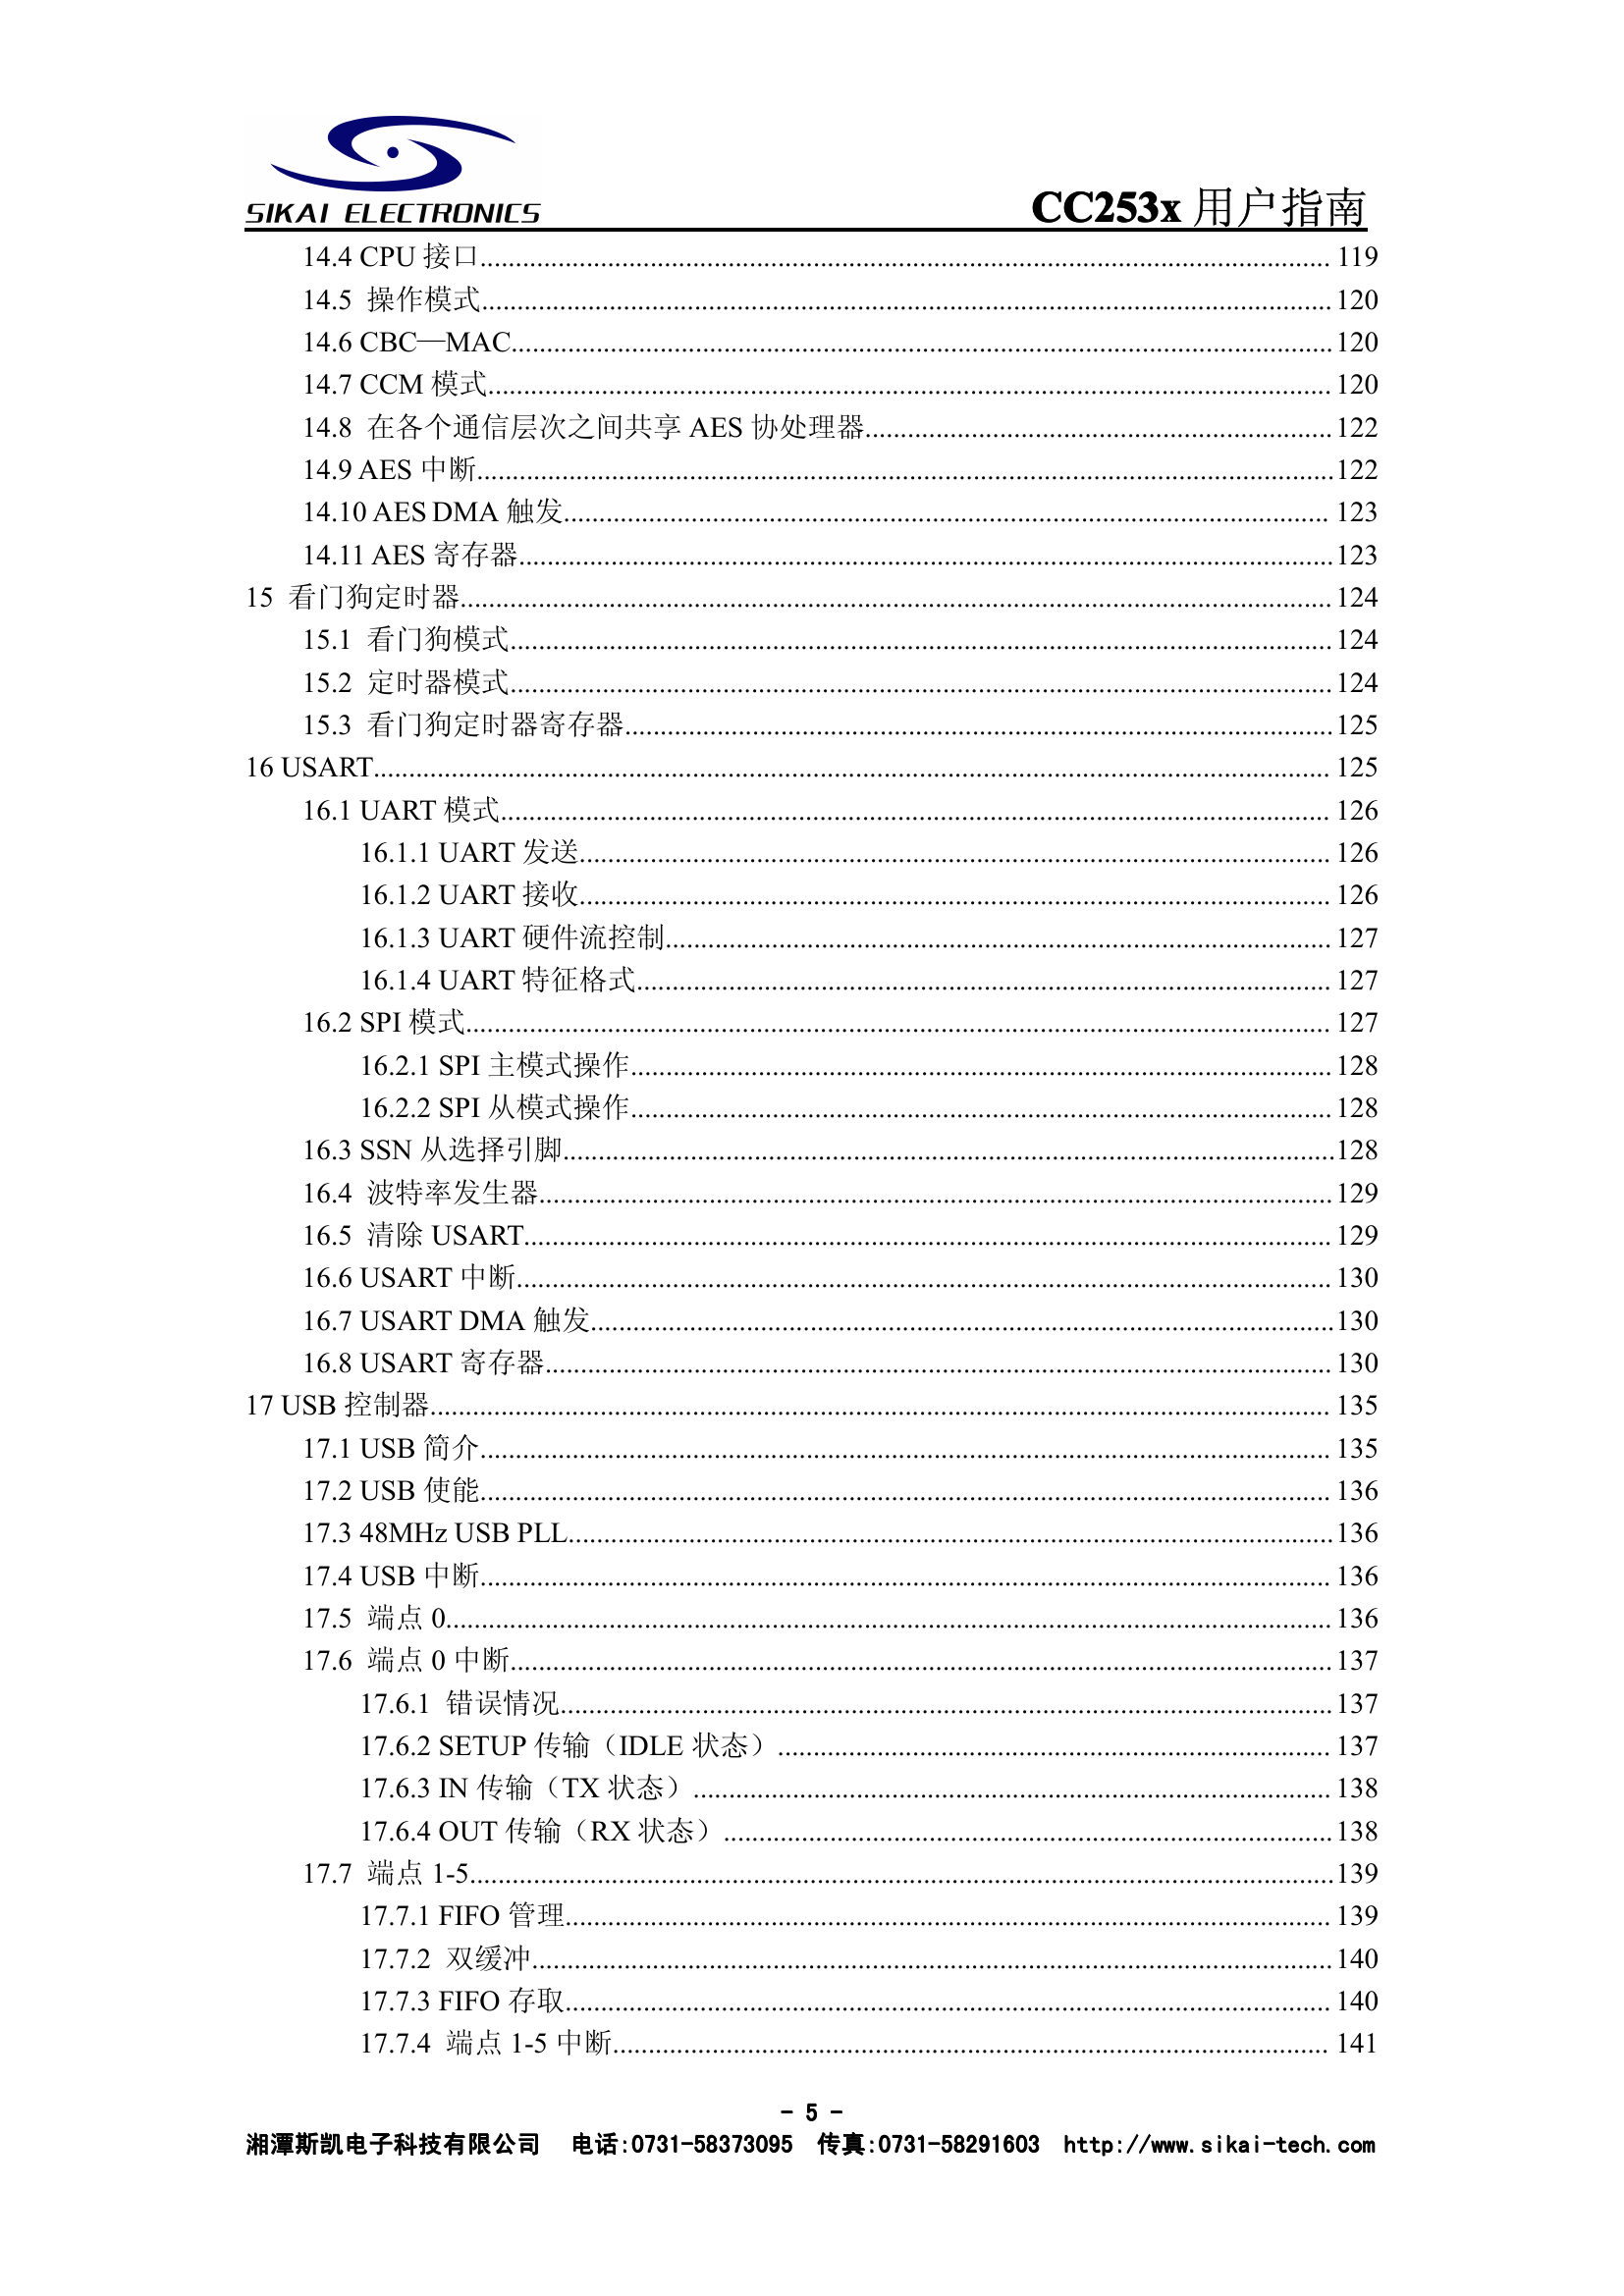 CC253x用户指南(中文).pdf-第6页.png